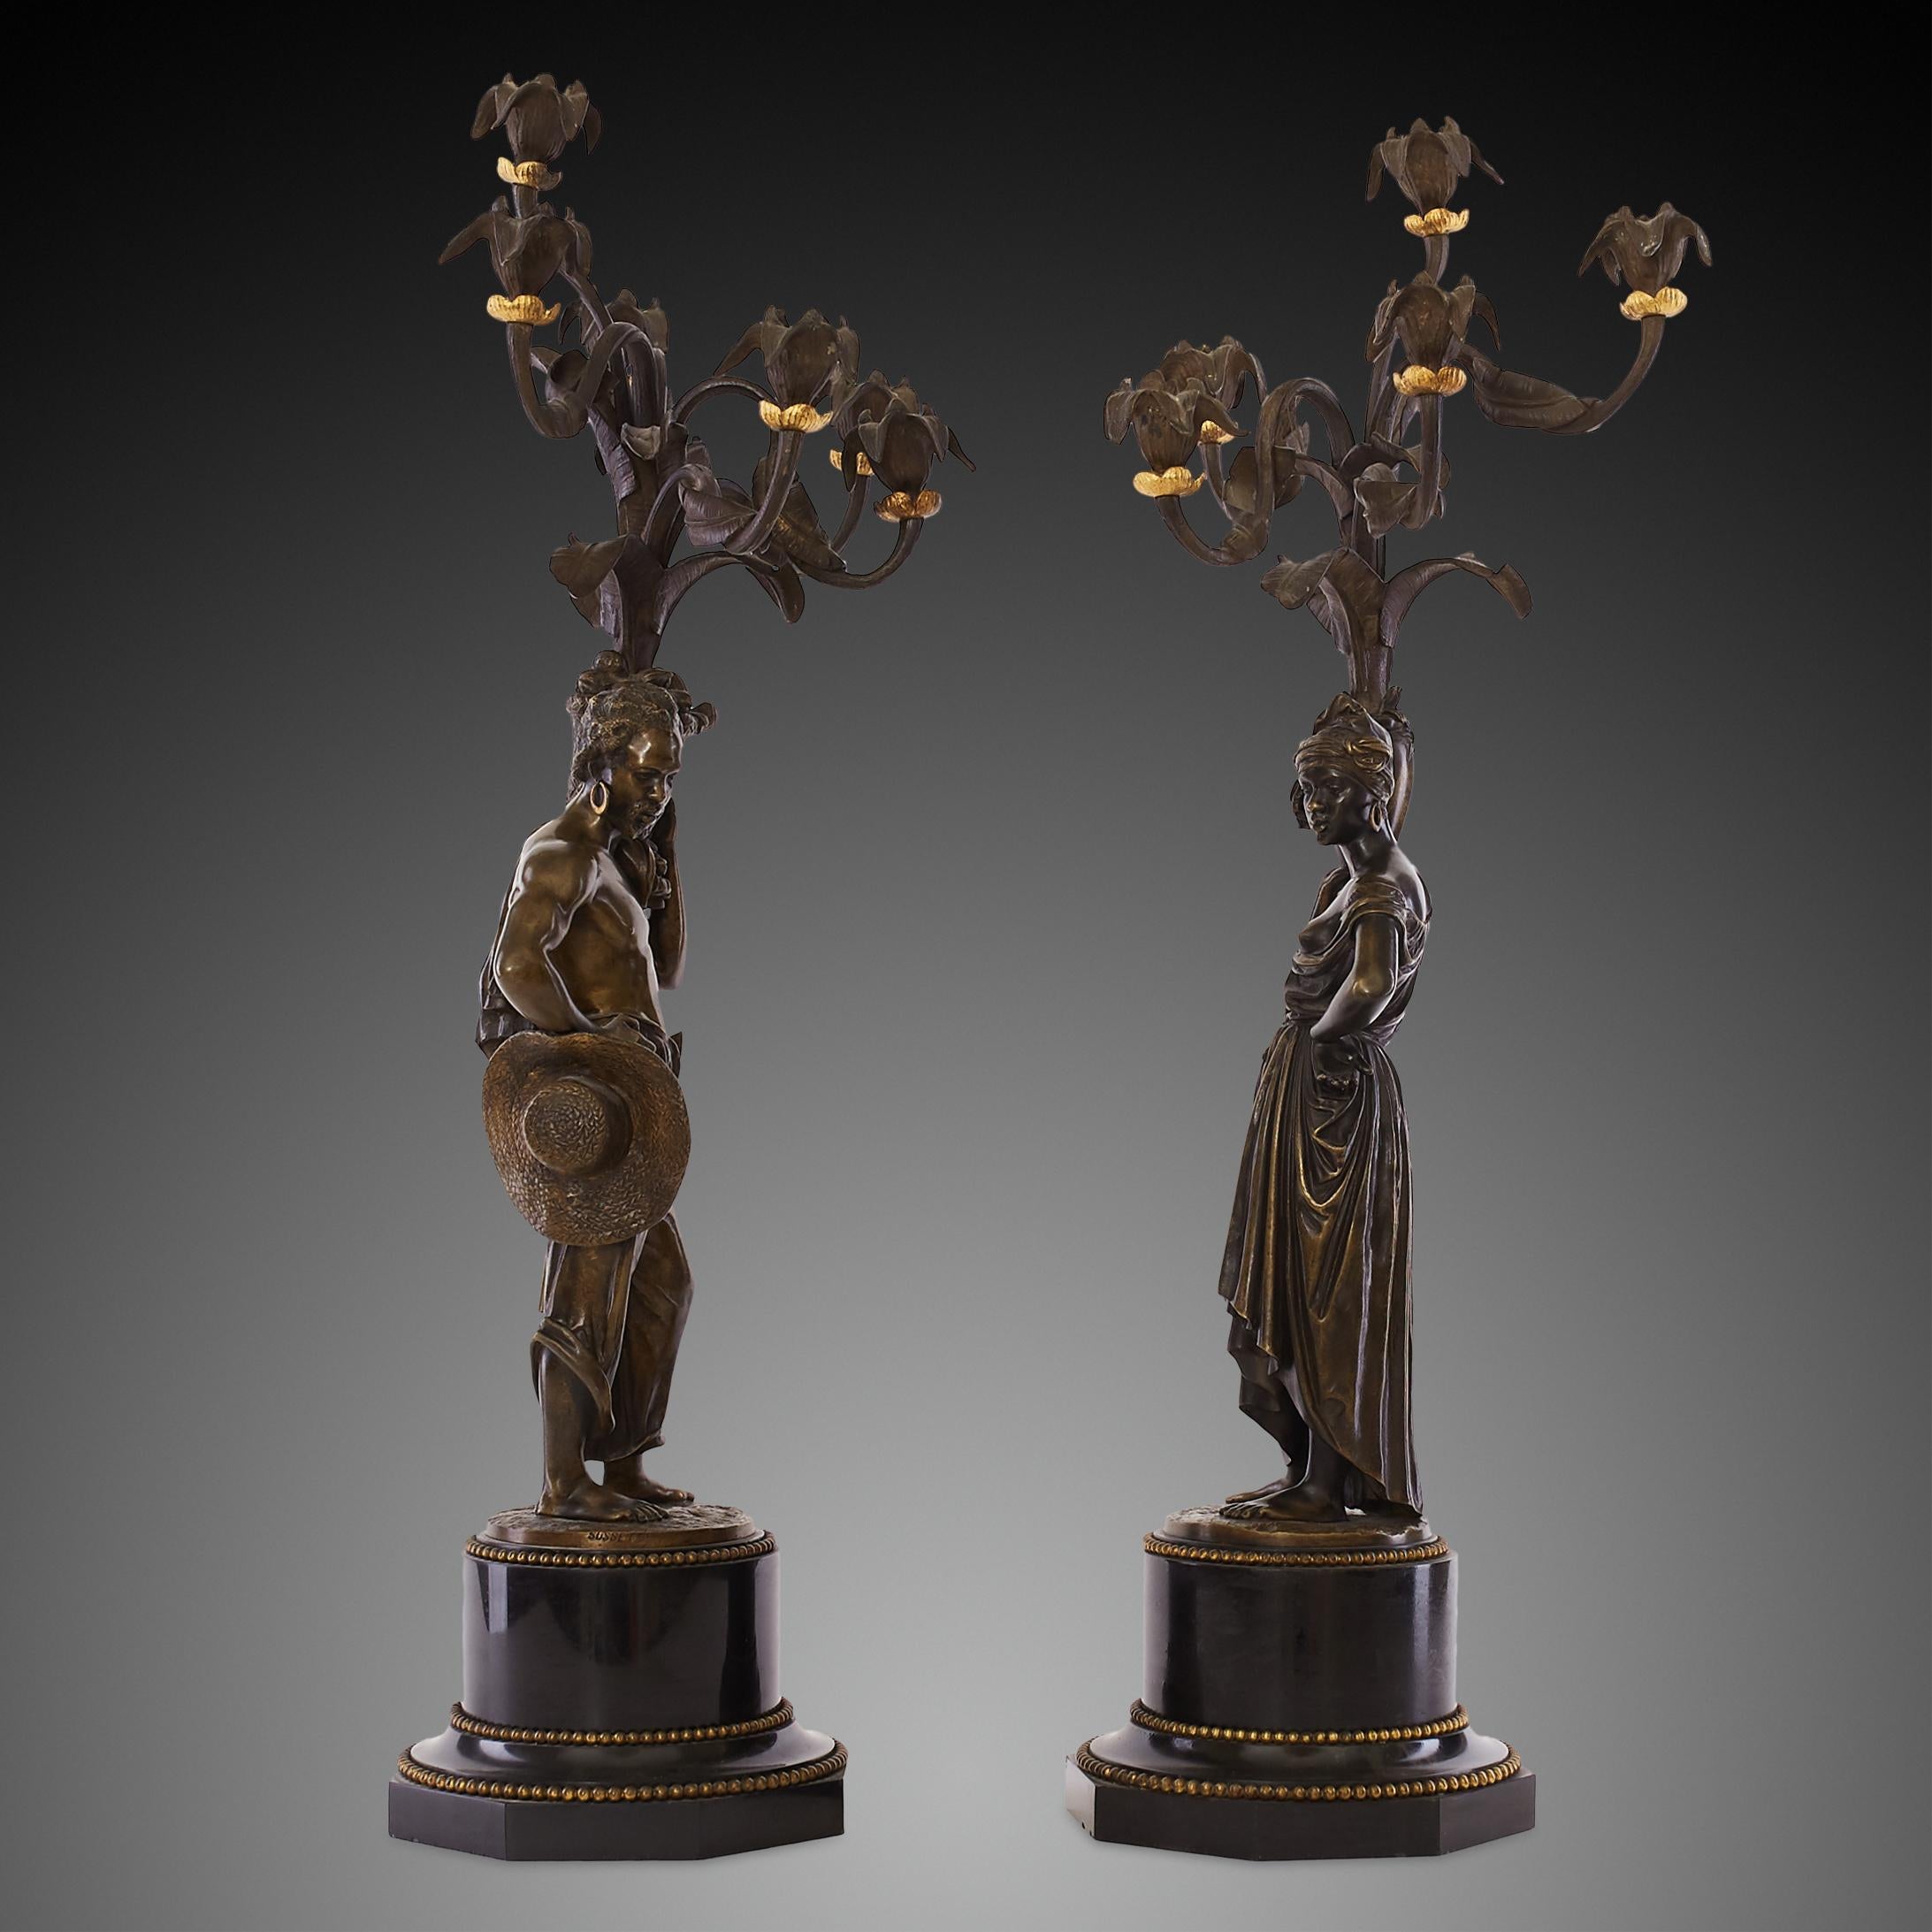 Diese fein gegossenen figürlichen Leuchter aus dem 19. Jahrhundert wurden aus vergoldeter und brünierter Bronze hergestellt, jeweils auf Sockeln aus schwarzem belgischem Marmor montiert und von Charles Cumberworth signiert. Die Skulpturen sind